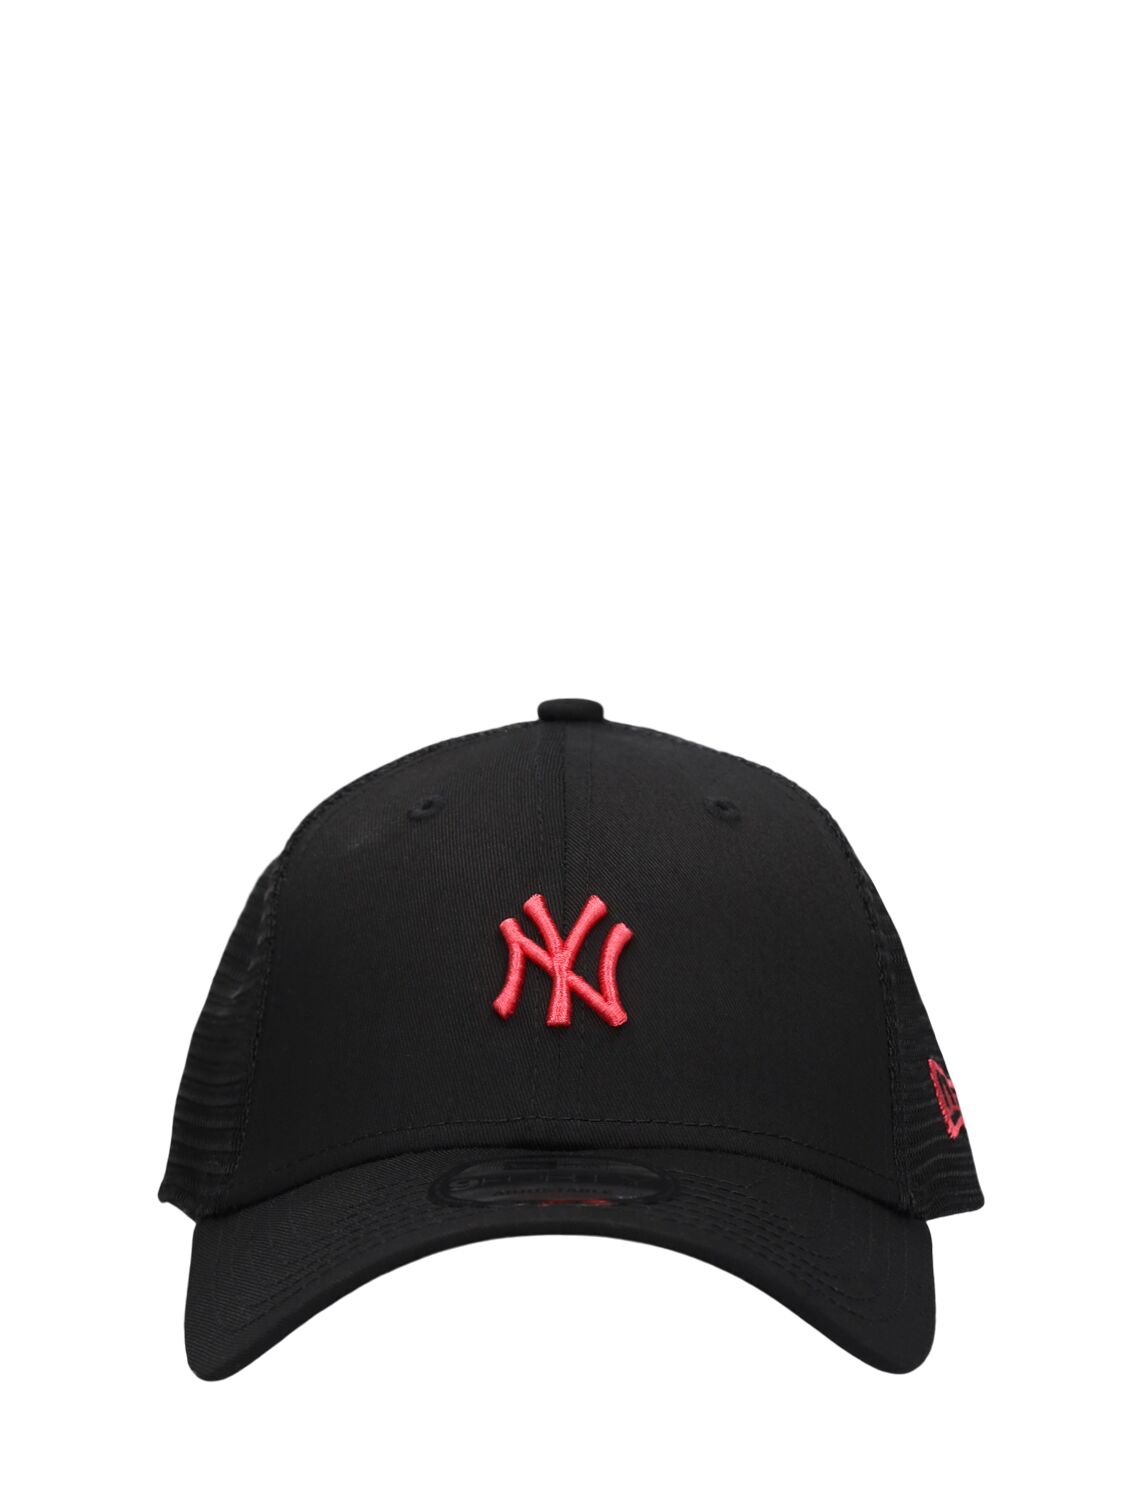 Ny Yankees 9forty Trucker Cap